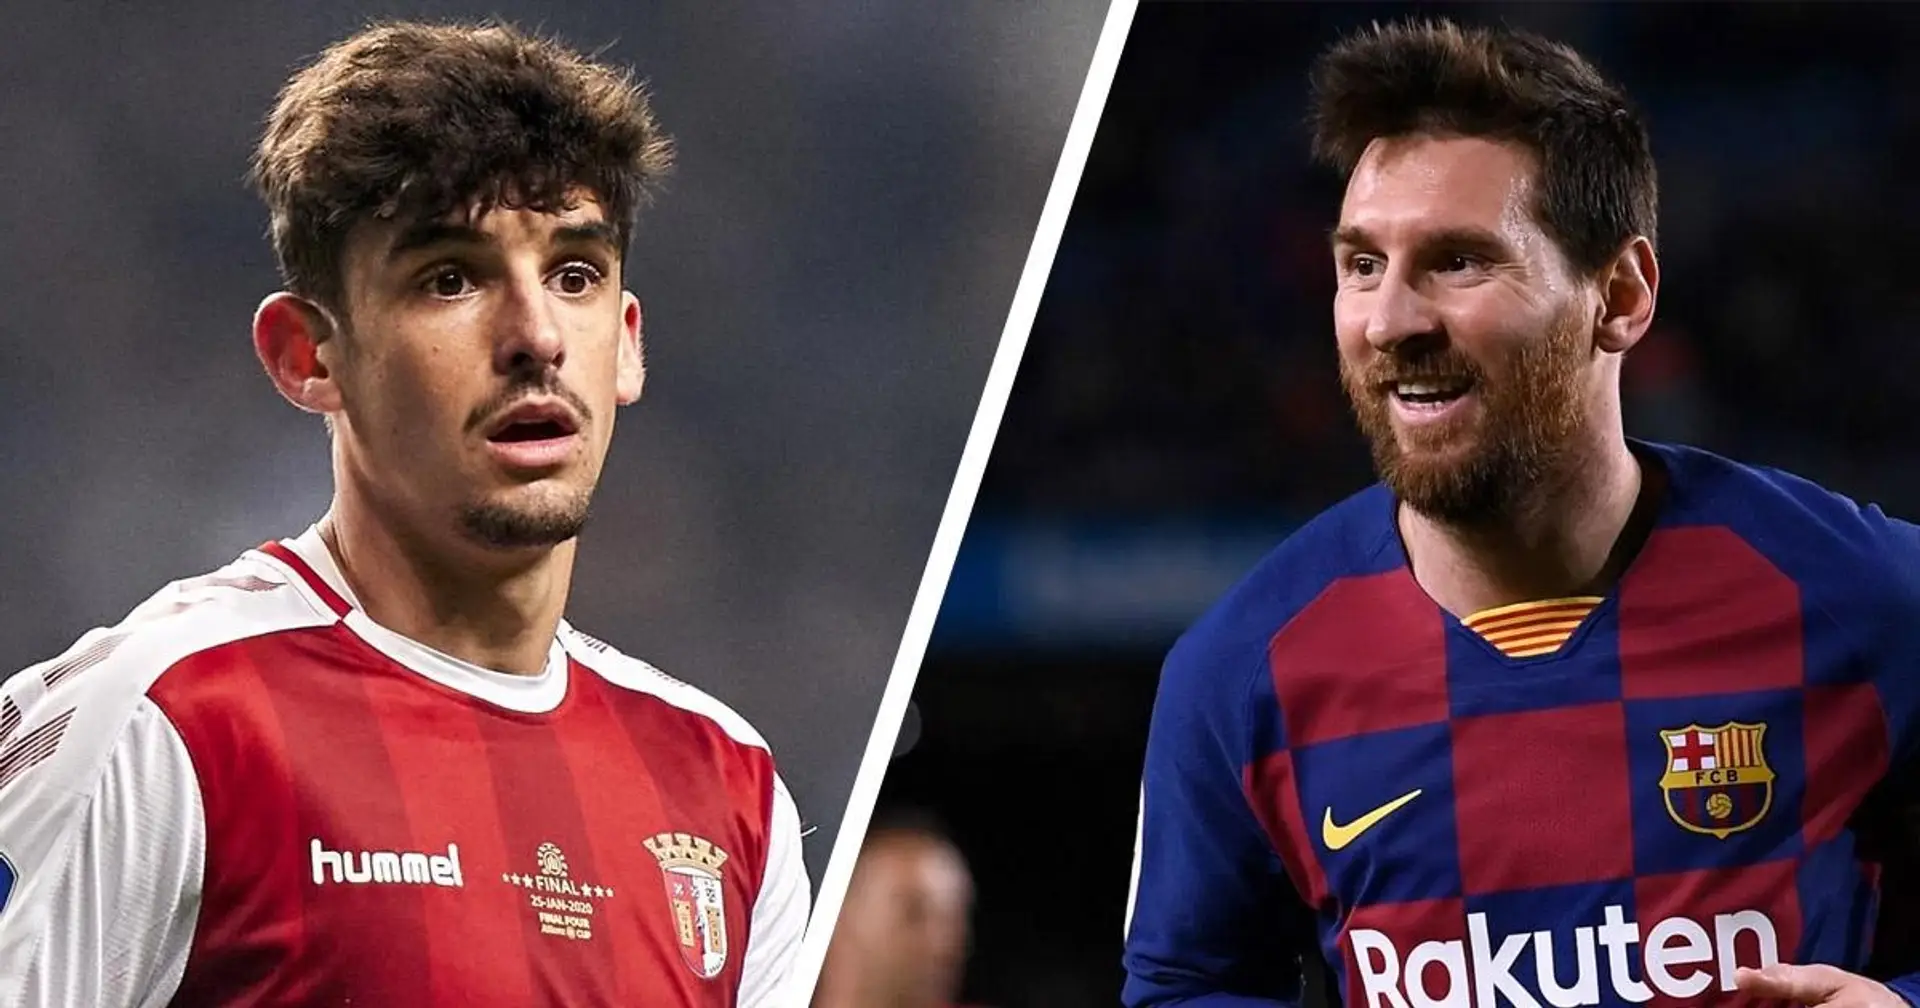 El ex entrenador de Trincao dice que Messi y Francisco 'se divertirán mucho' en el Barça